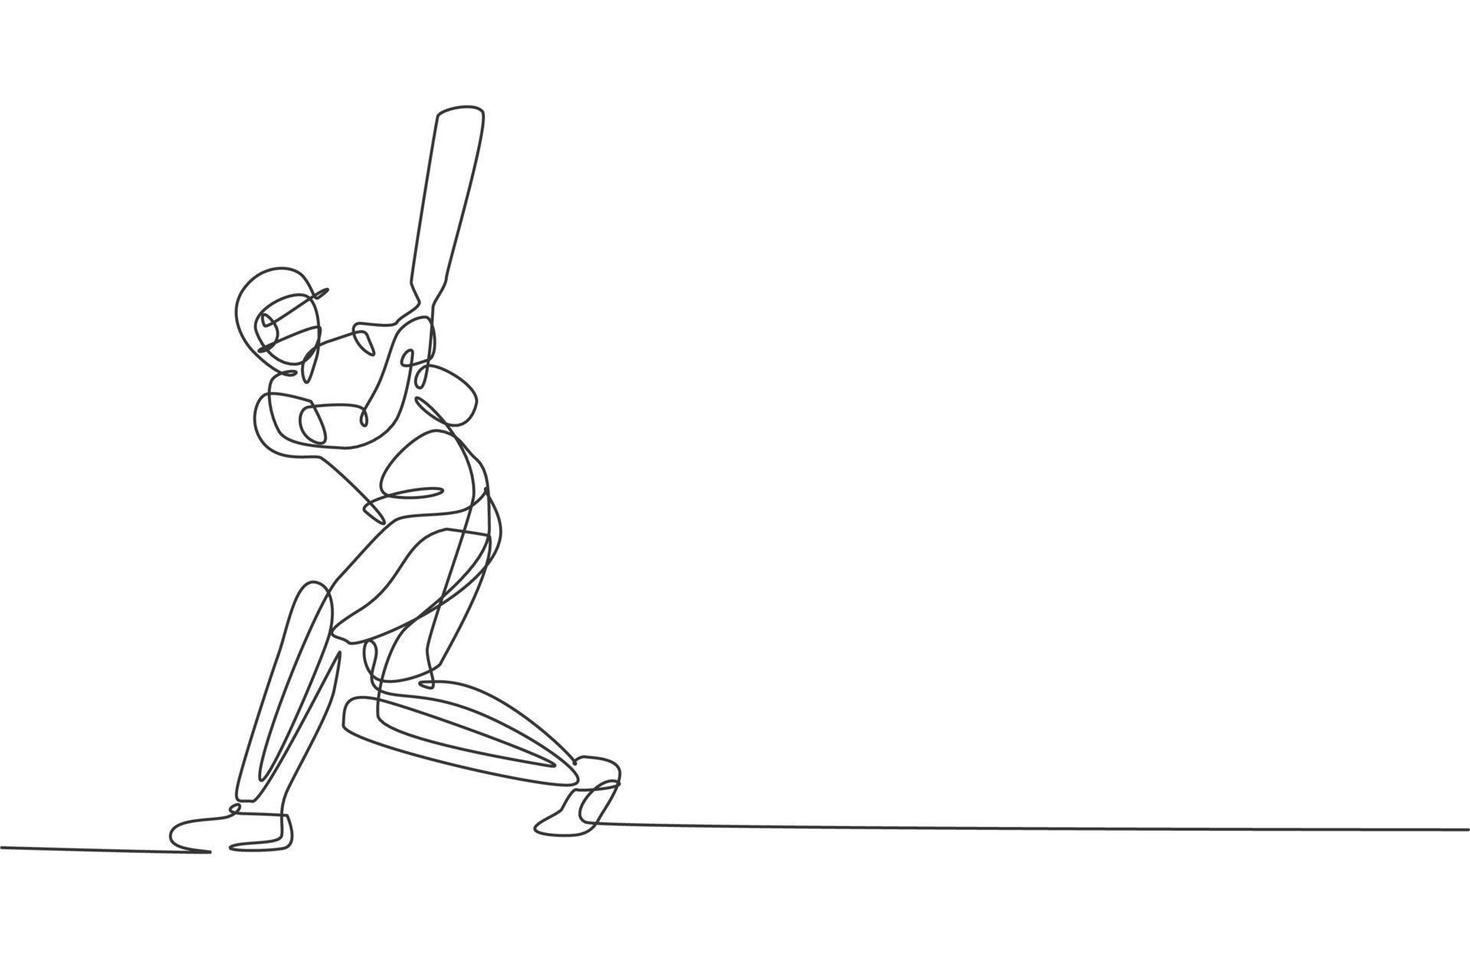 disegno a linea continua singola di un giovane giocatore agile di cricket che pratica colpire la palla nell'illustrazione vettoriale del campo. concetto di esercizio sportivo. design alla moda di una linea per i media di promozione del cricket